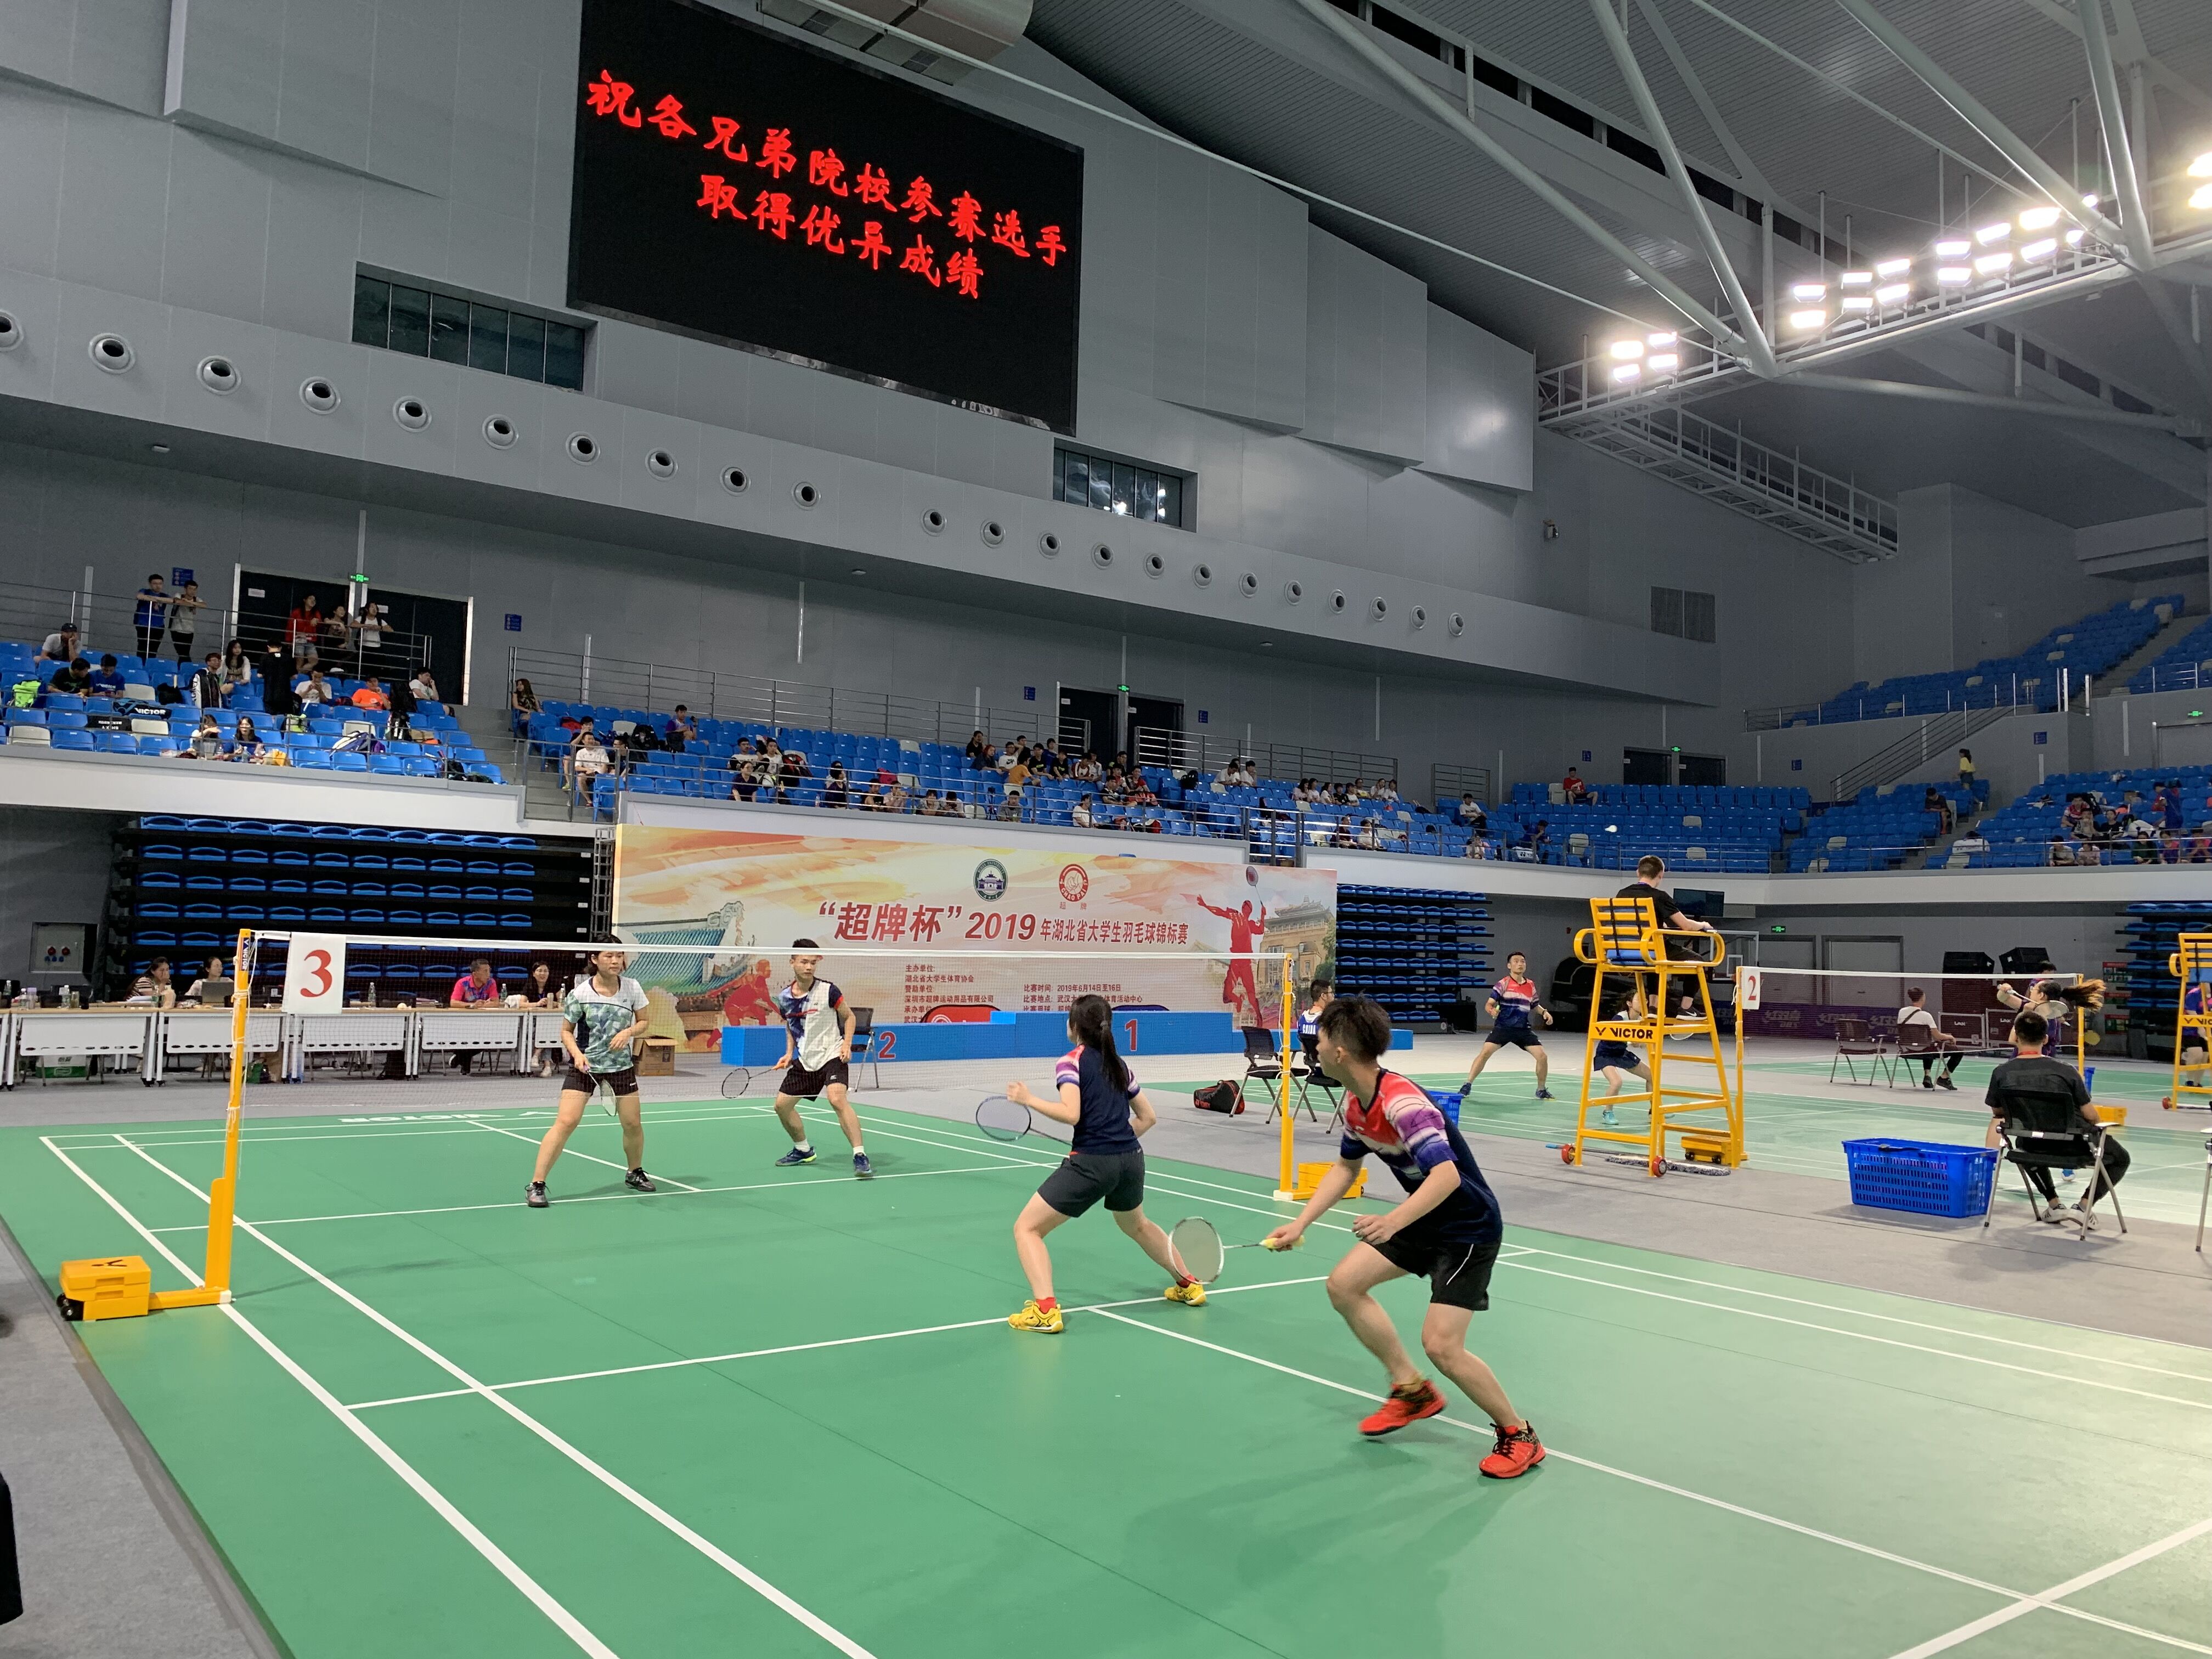 我校羽毛球校队在2019年湖北省大学生羽毛球锦标赛中获佳绩